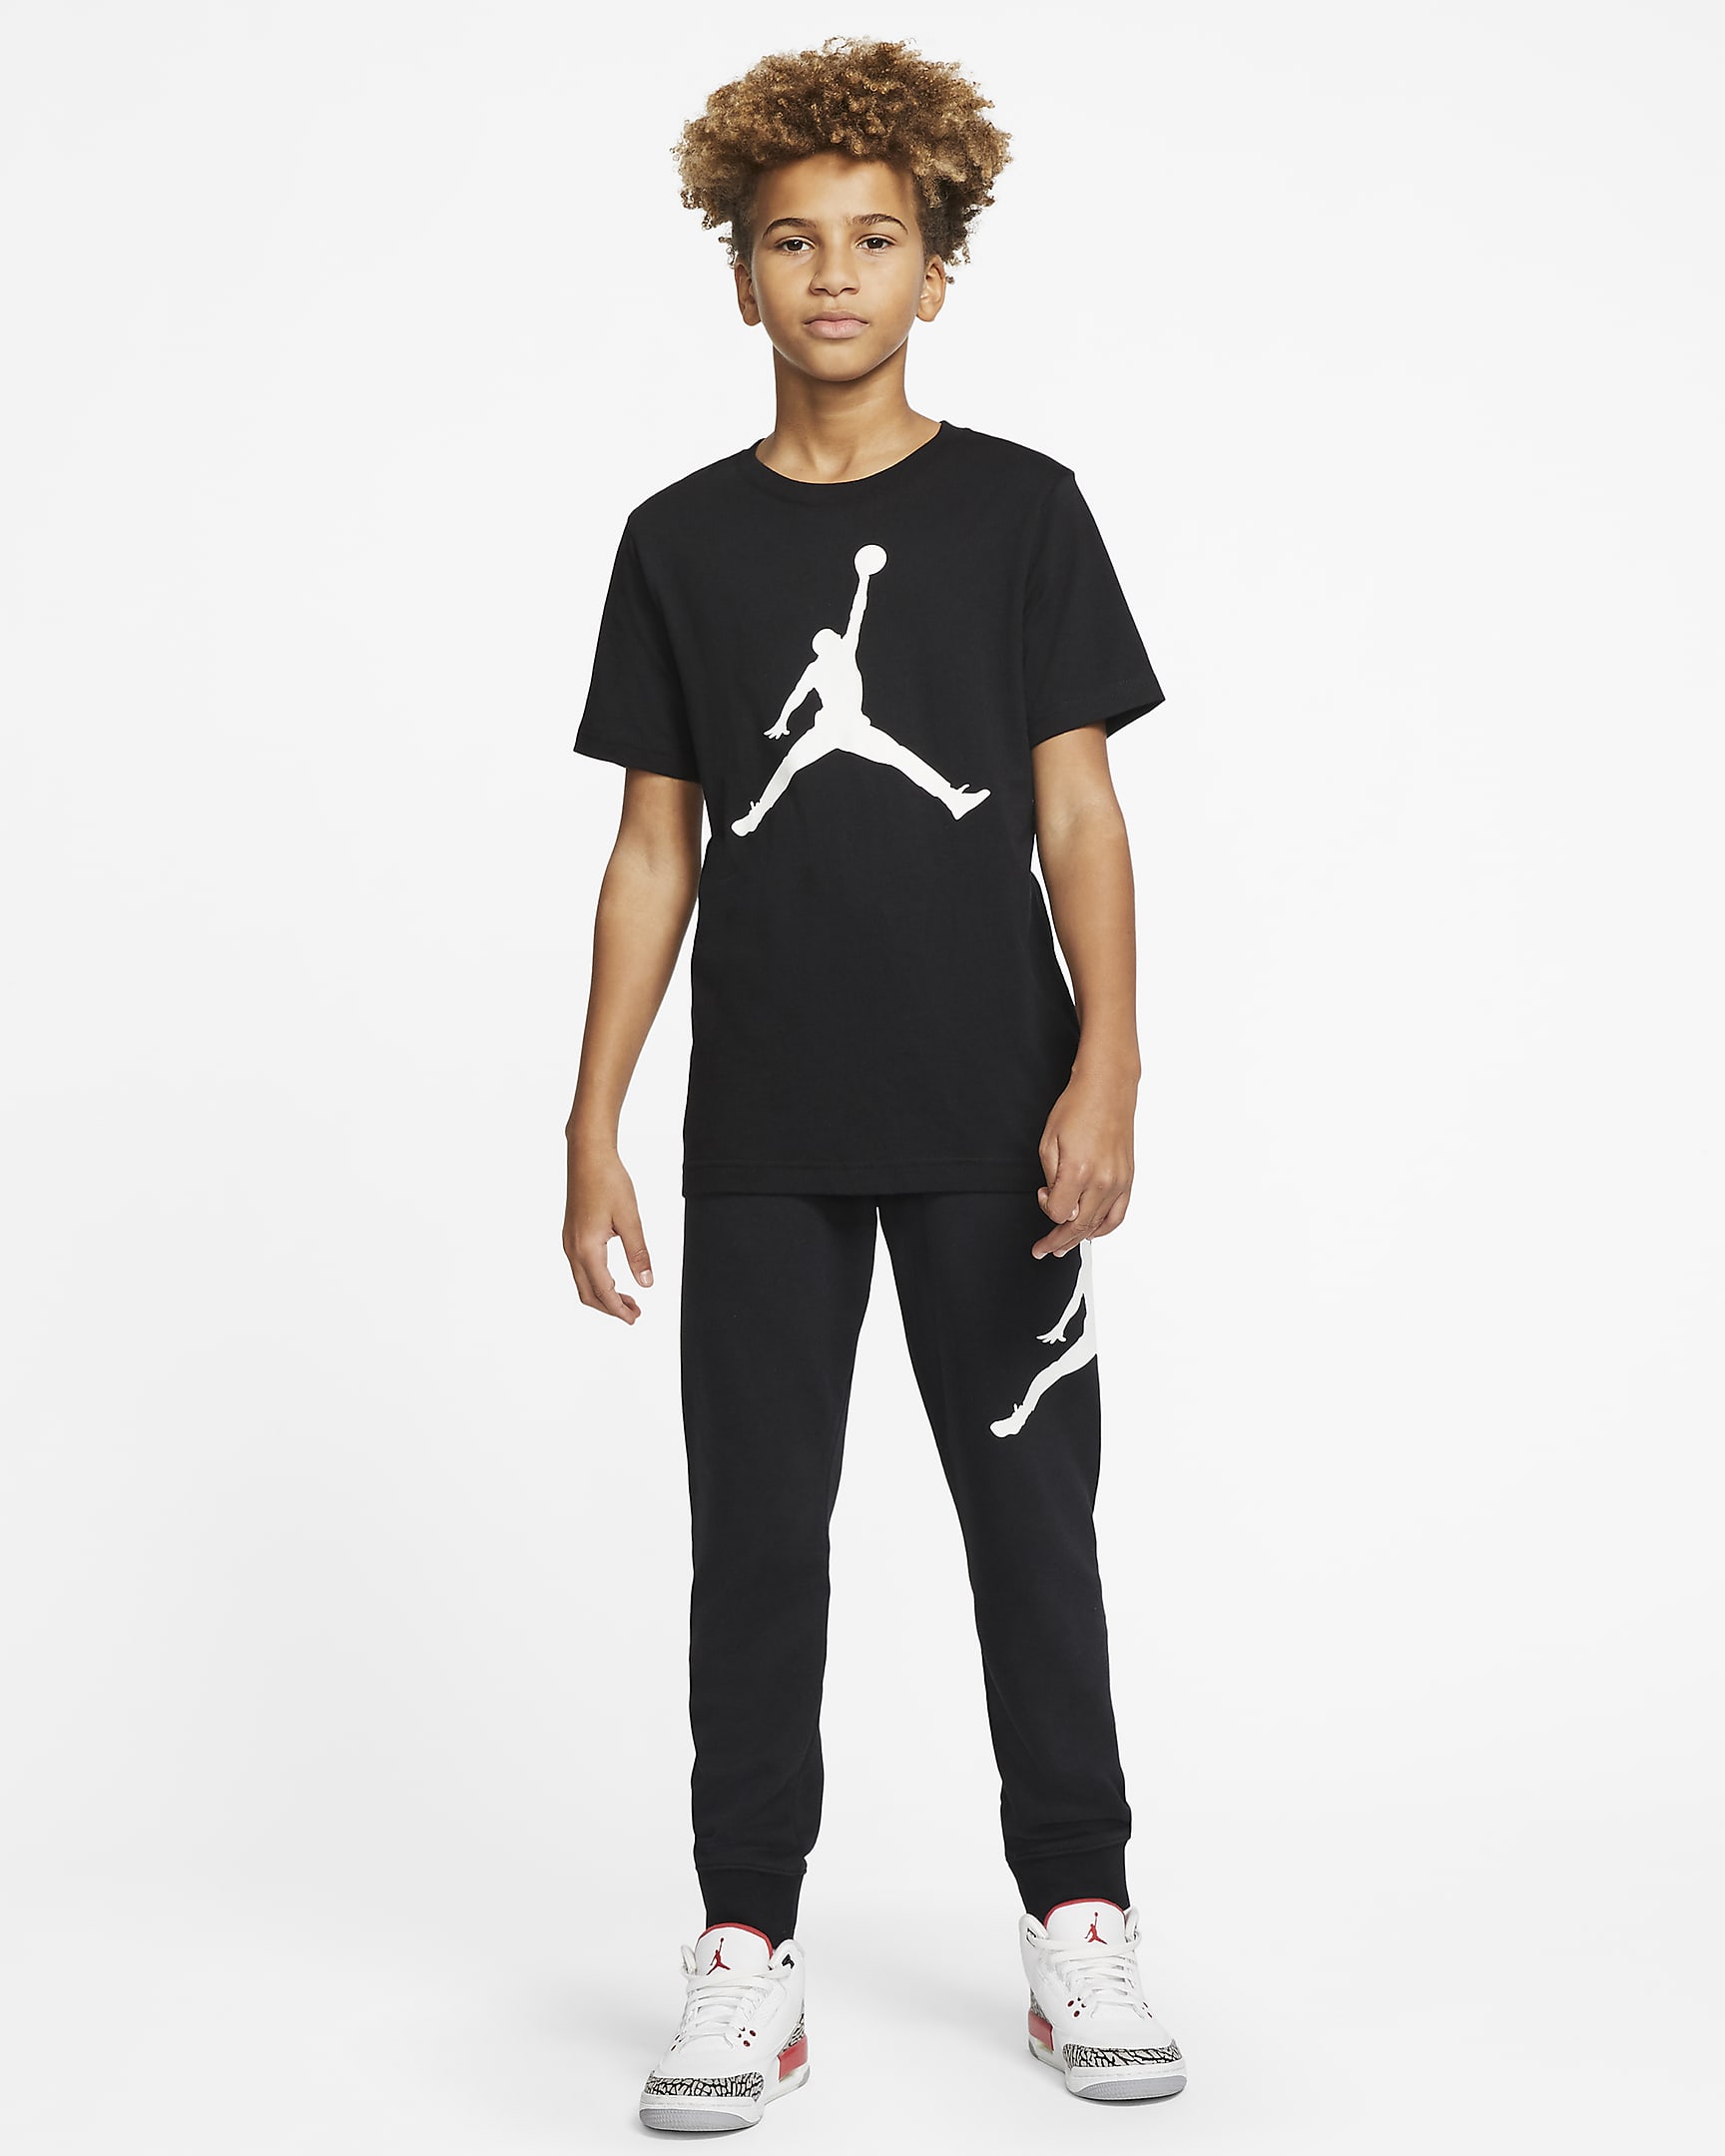 Playera para niños talla grande Jordan Jumpman. Nike.com